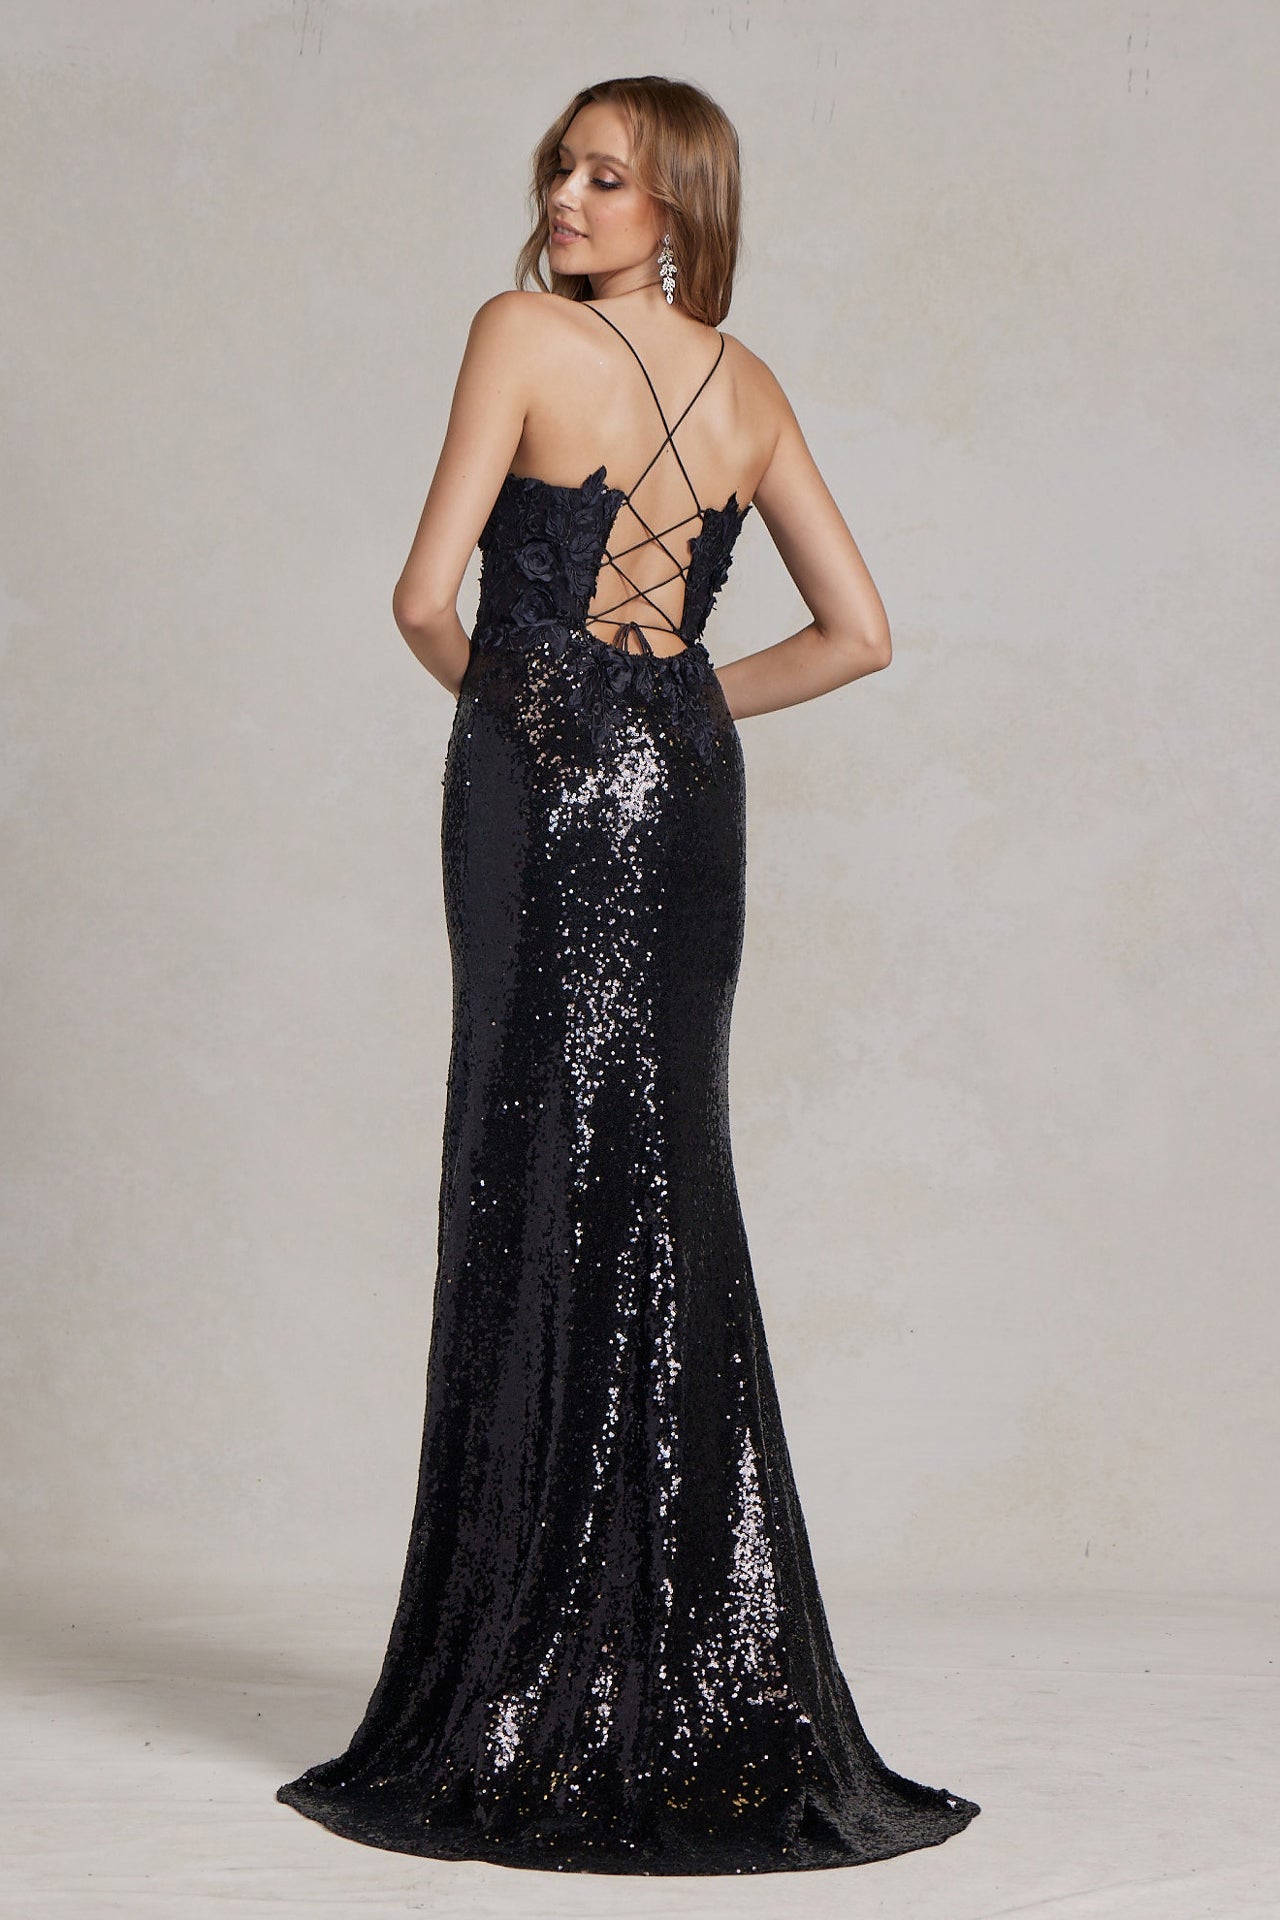 Side Slit Embroidered Applique Illusion V-Neck Long Evening Dress NXR1207-Evening Dress-smcfashion.com